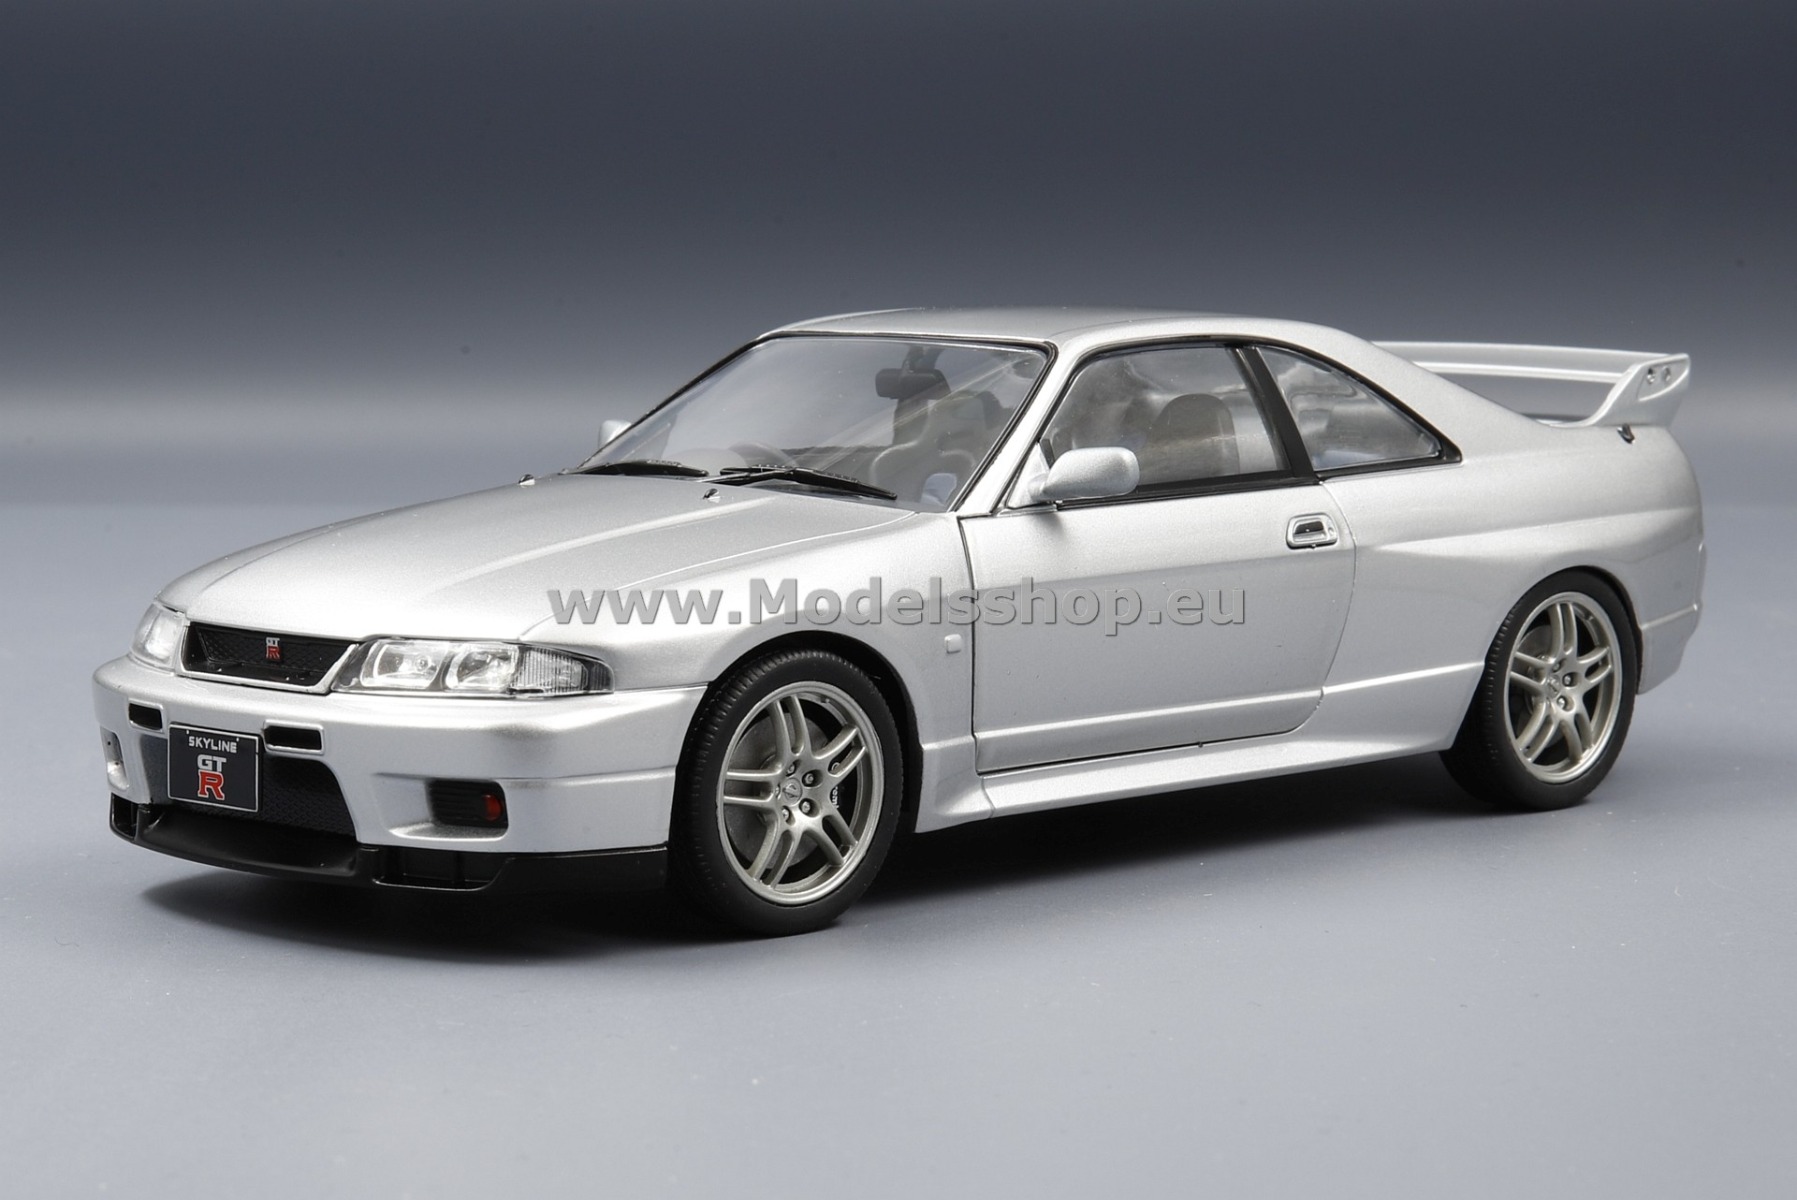 Nissan Skyline GT-R (R33), RHD, 1997 /silver/